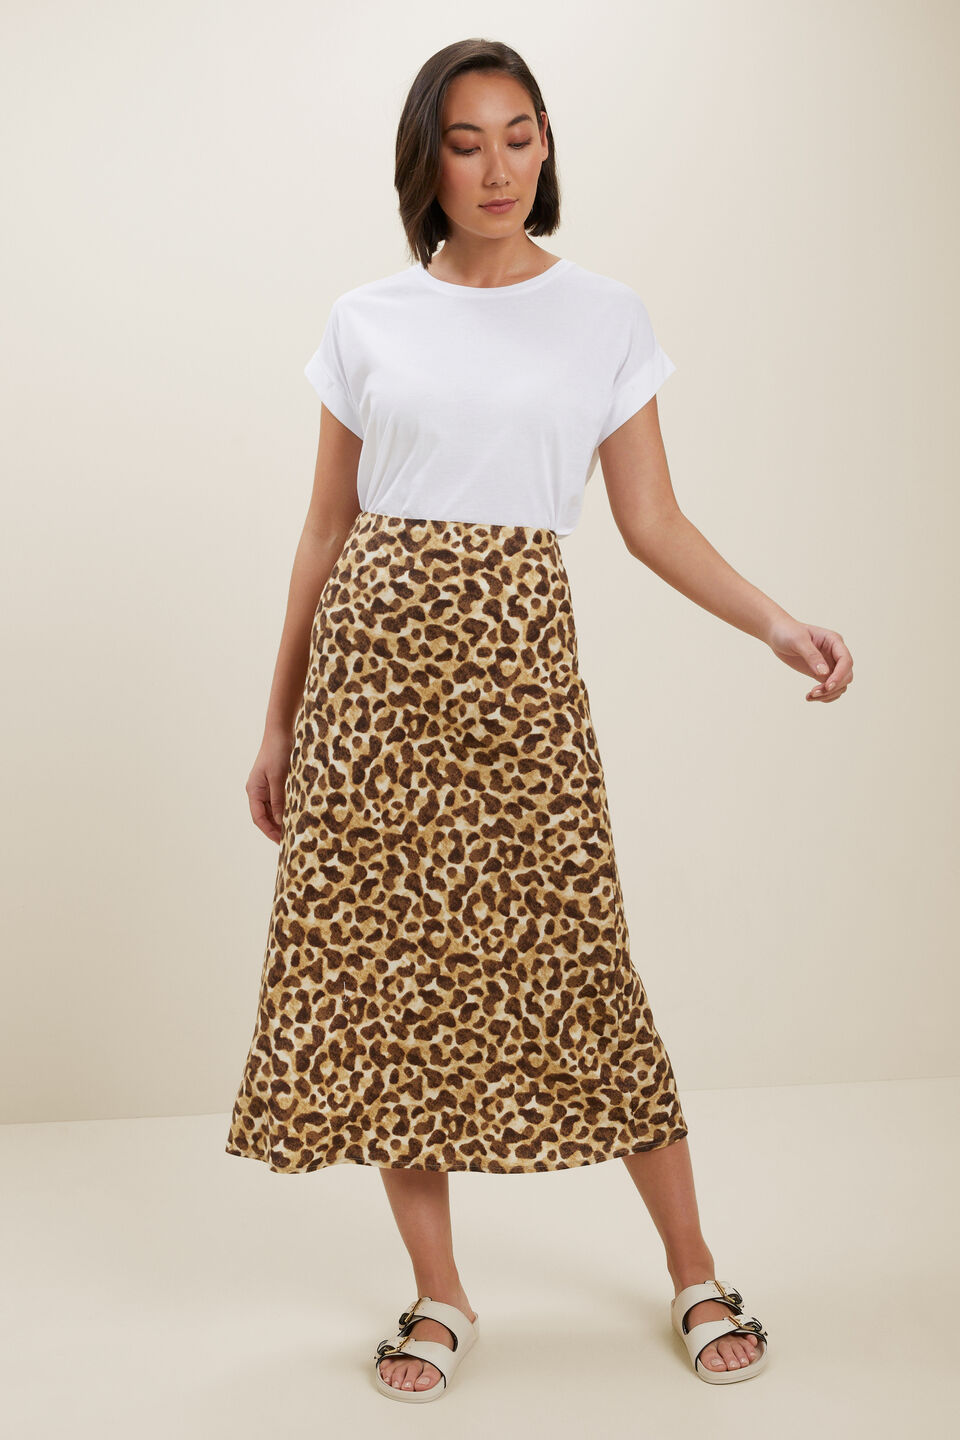 Leopard Slip Skirt  Leopard